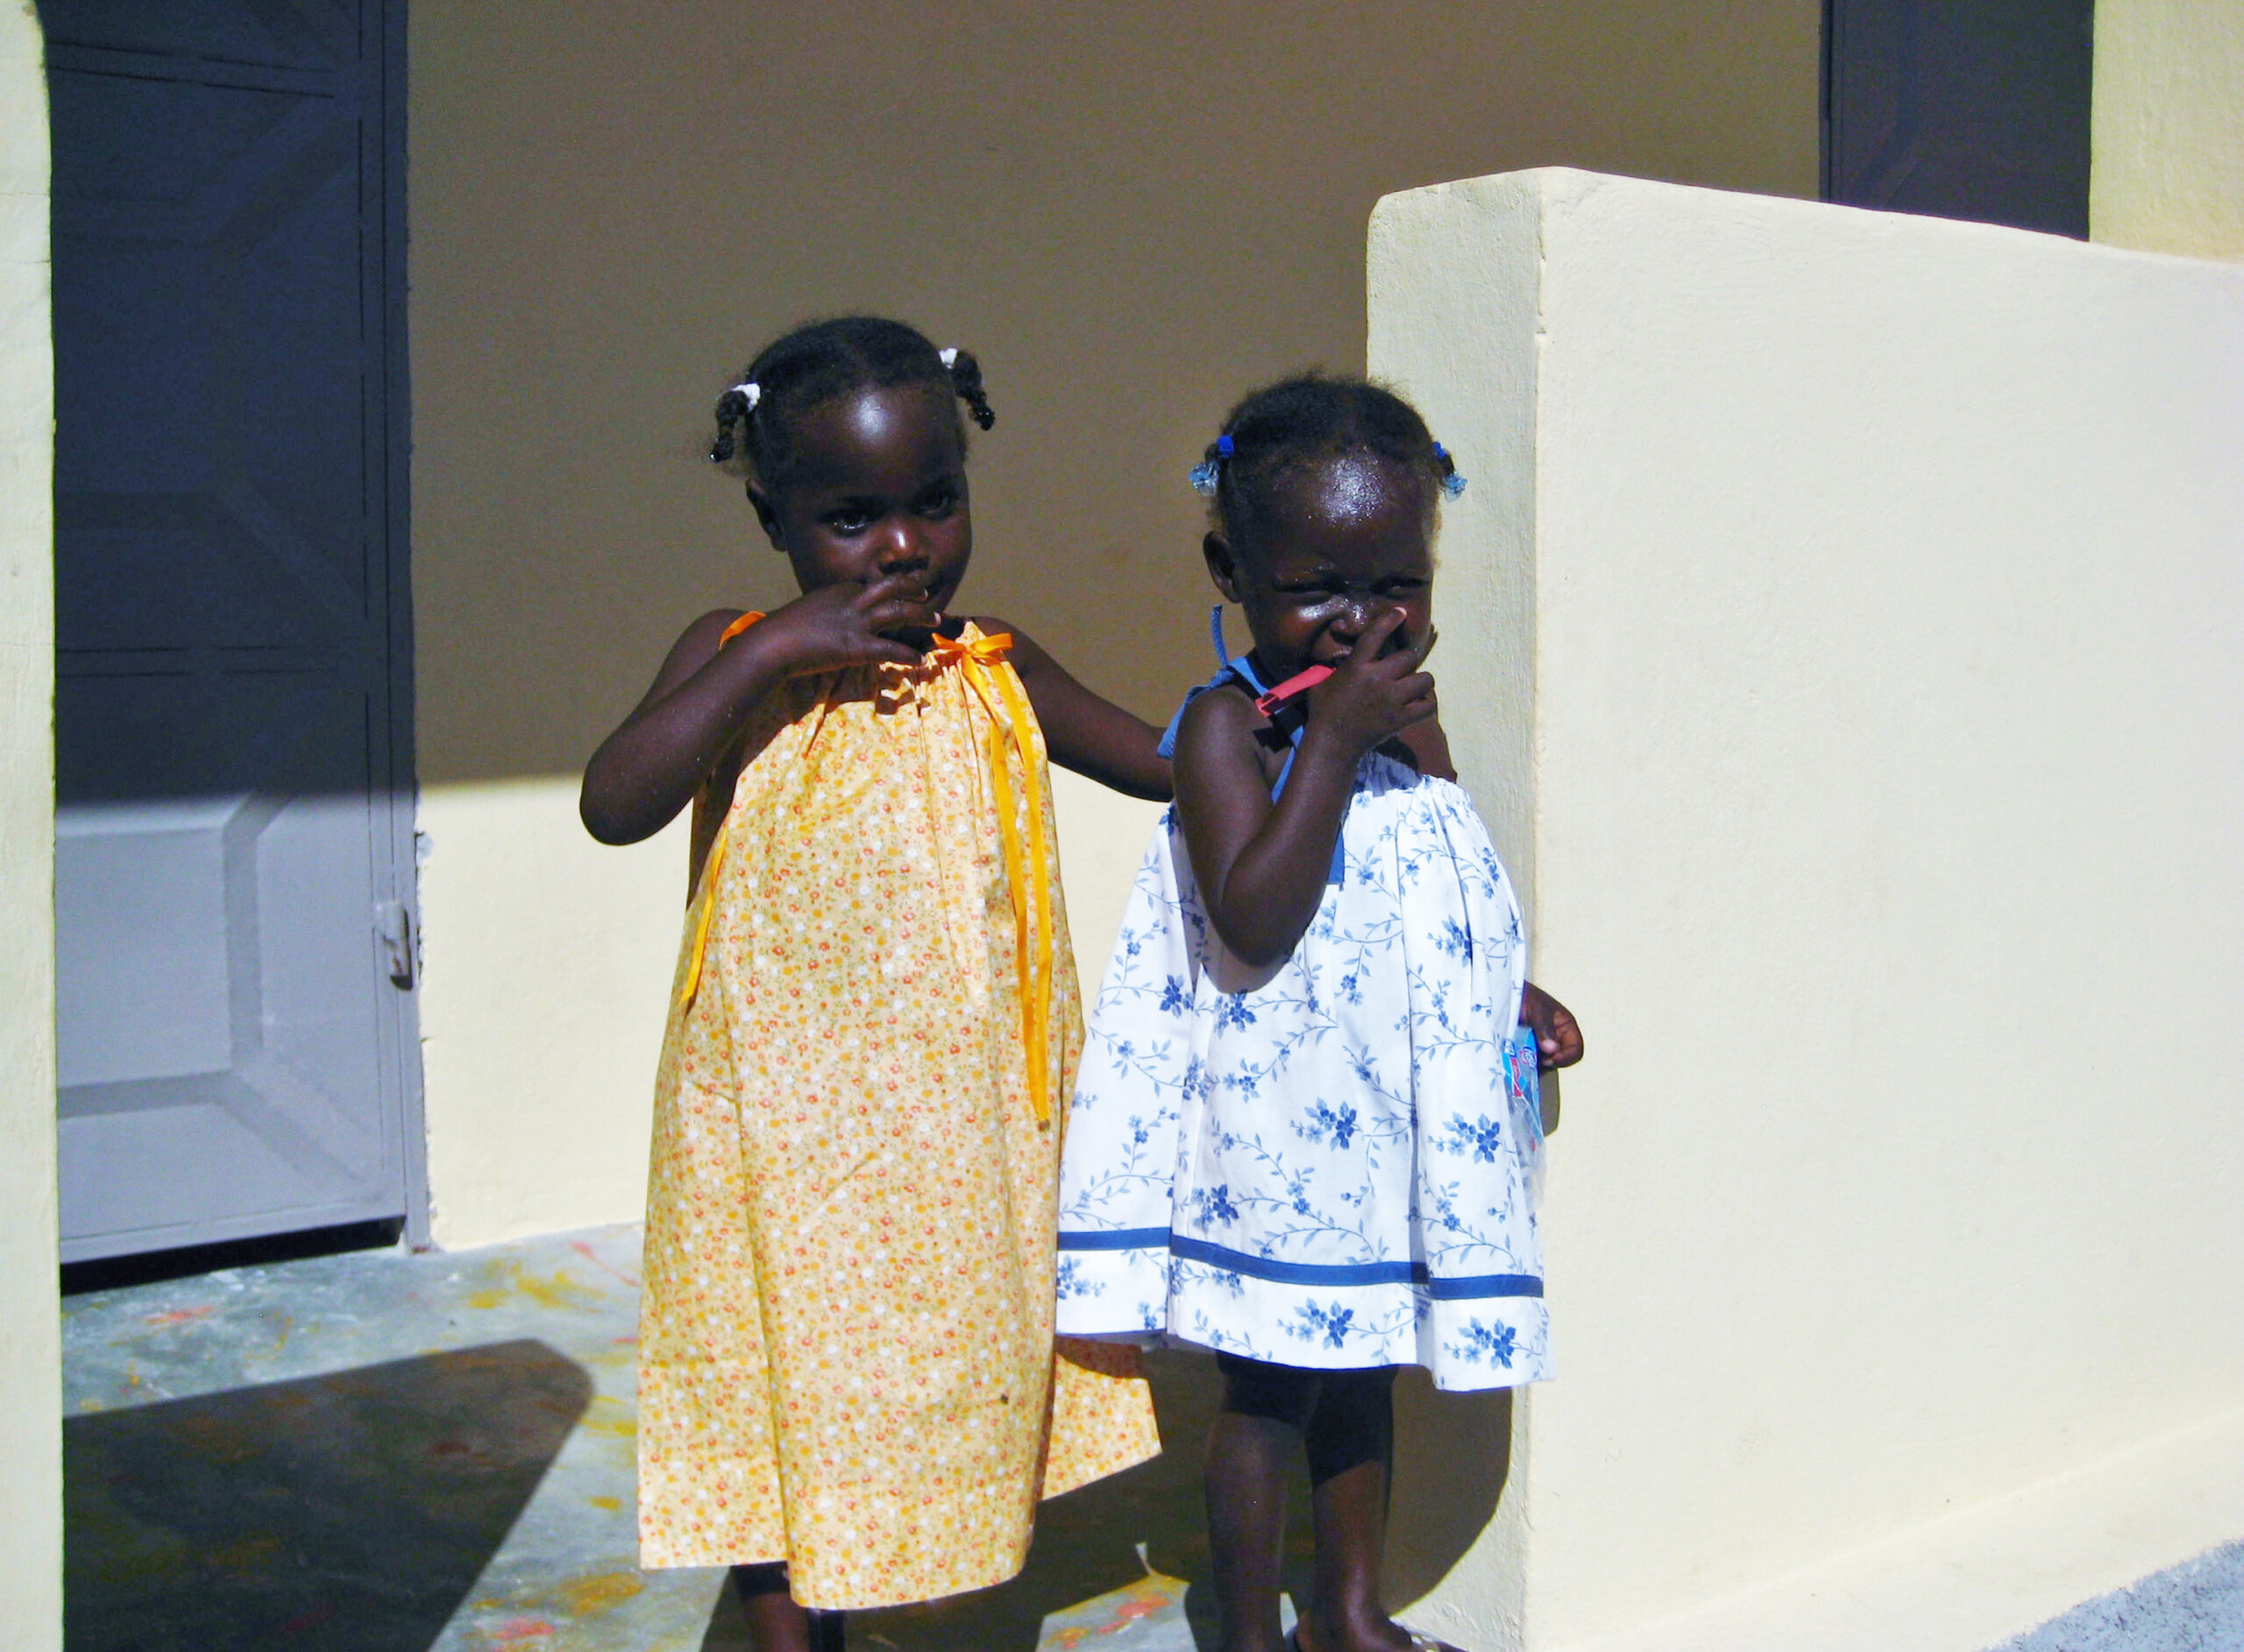 Young Haitian girls